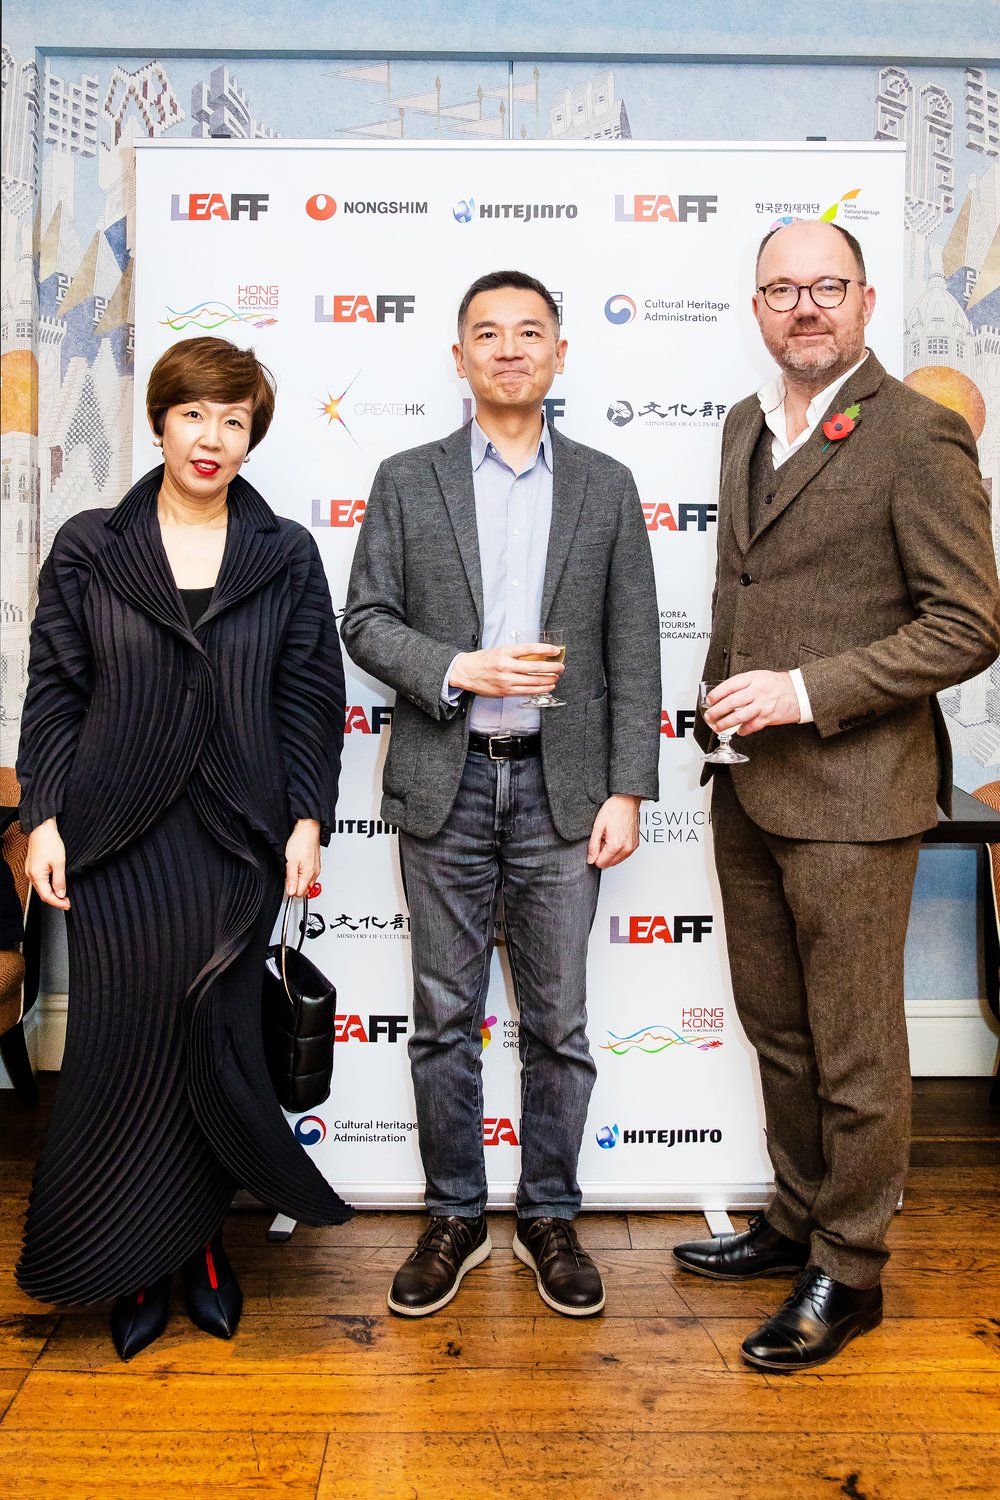 左起Hyejung Jeon影展總監、駐英文化組陳組長斌全、影展顧問Ian Haydn Smith.jpg